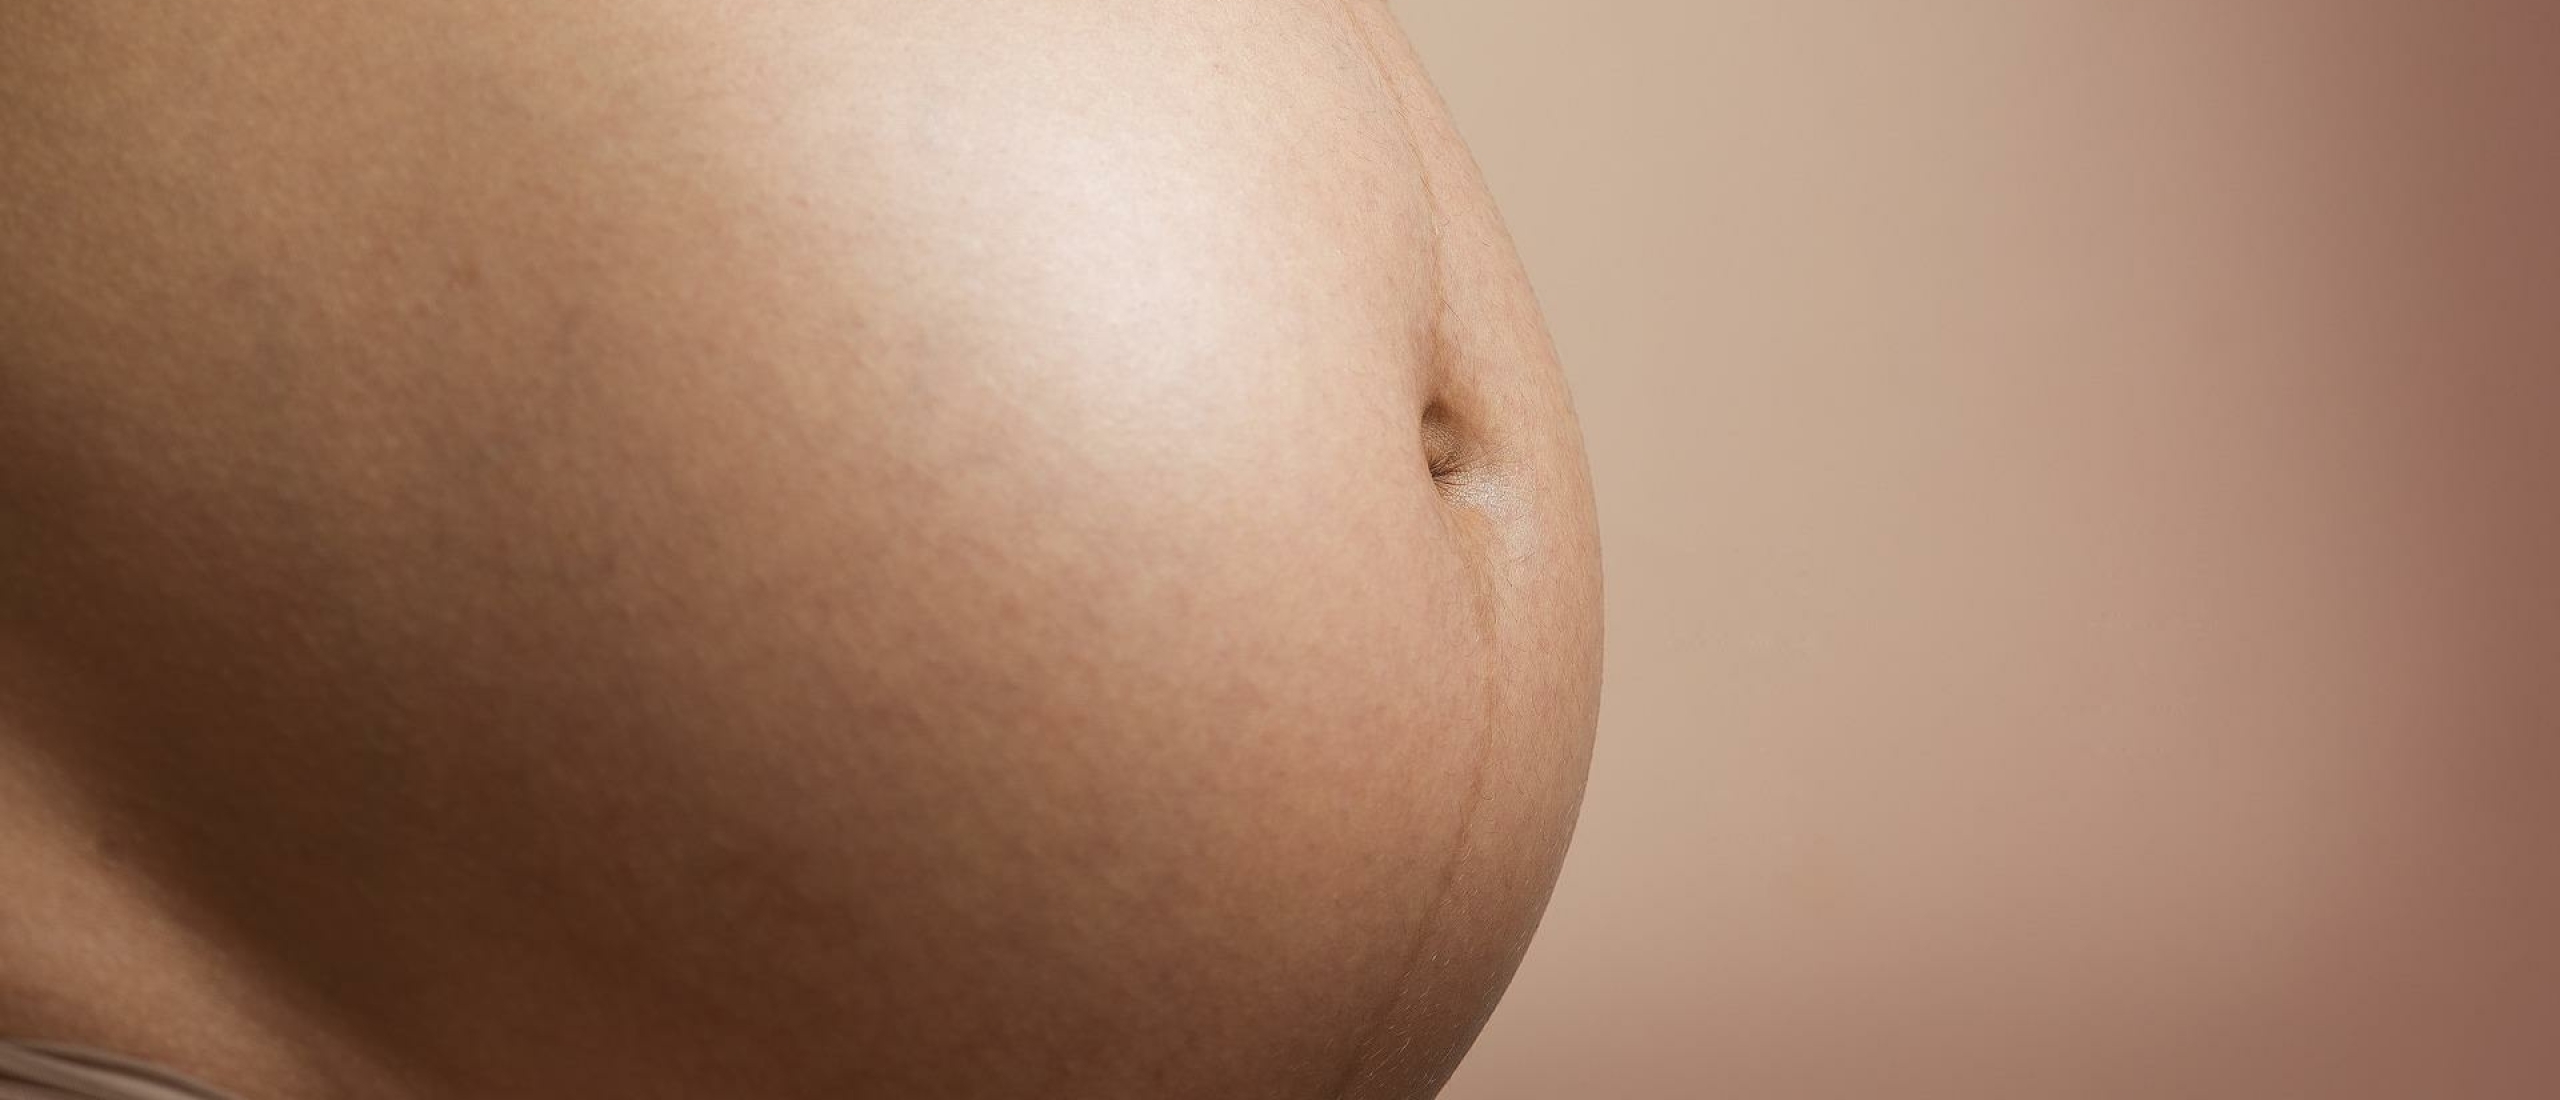 zwangere blote buik